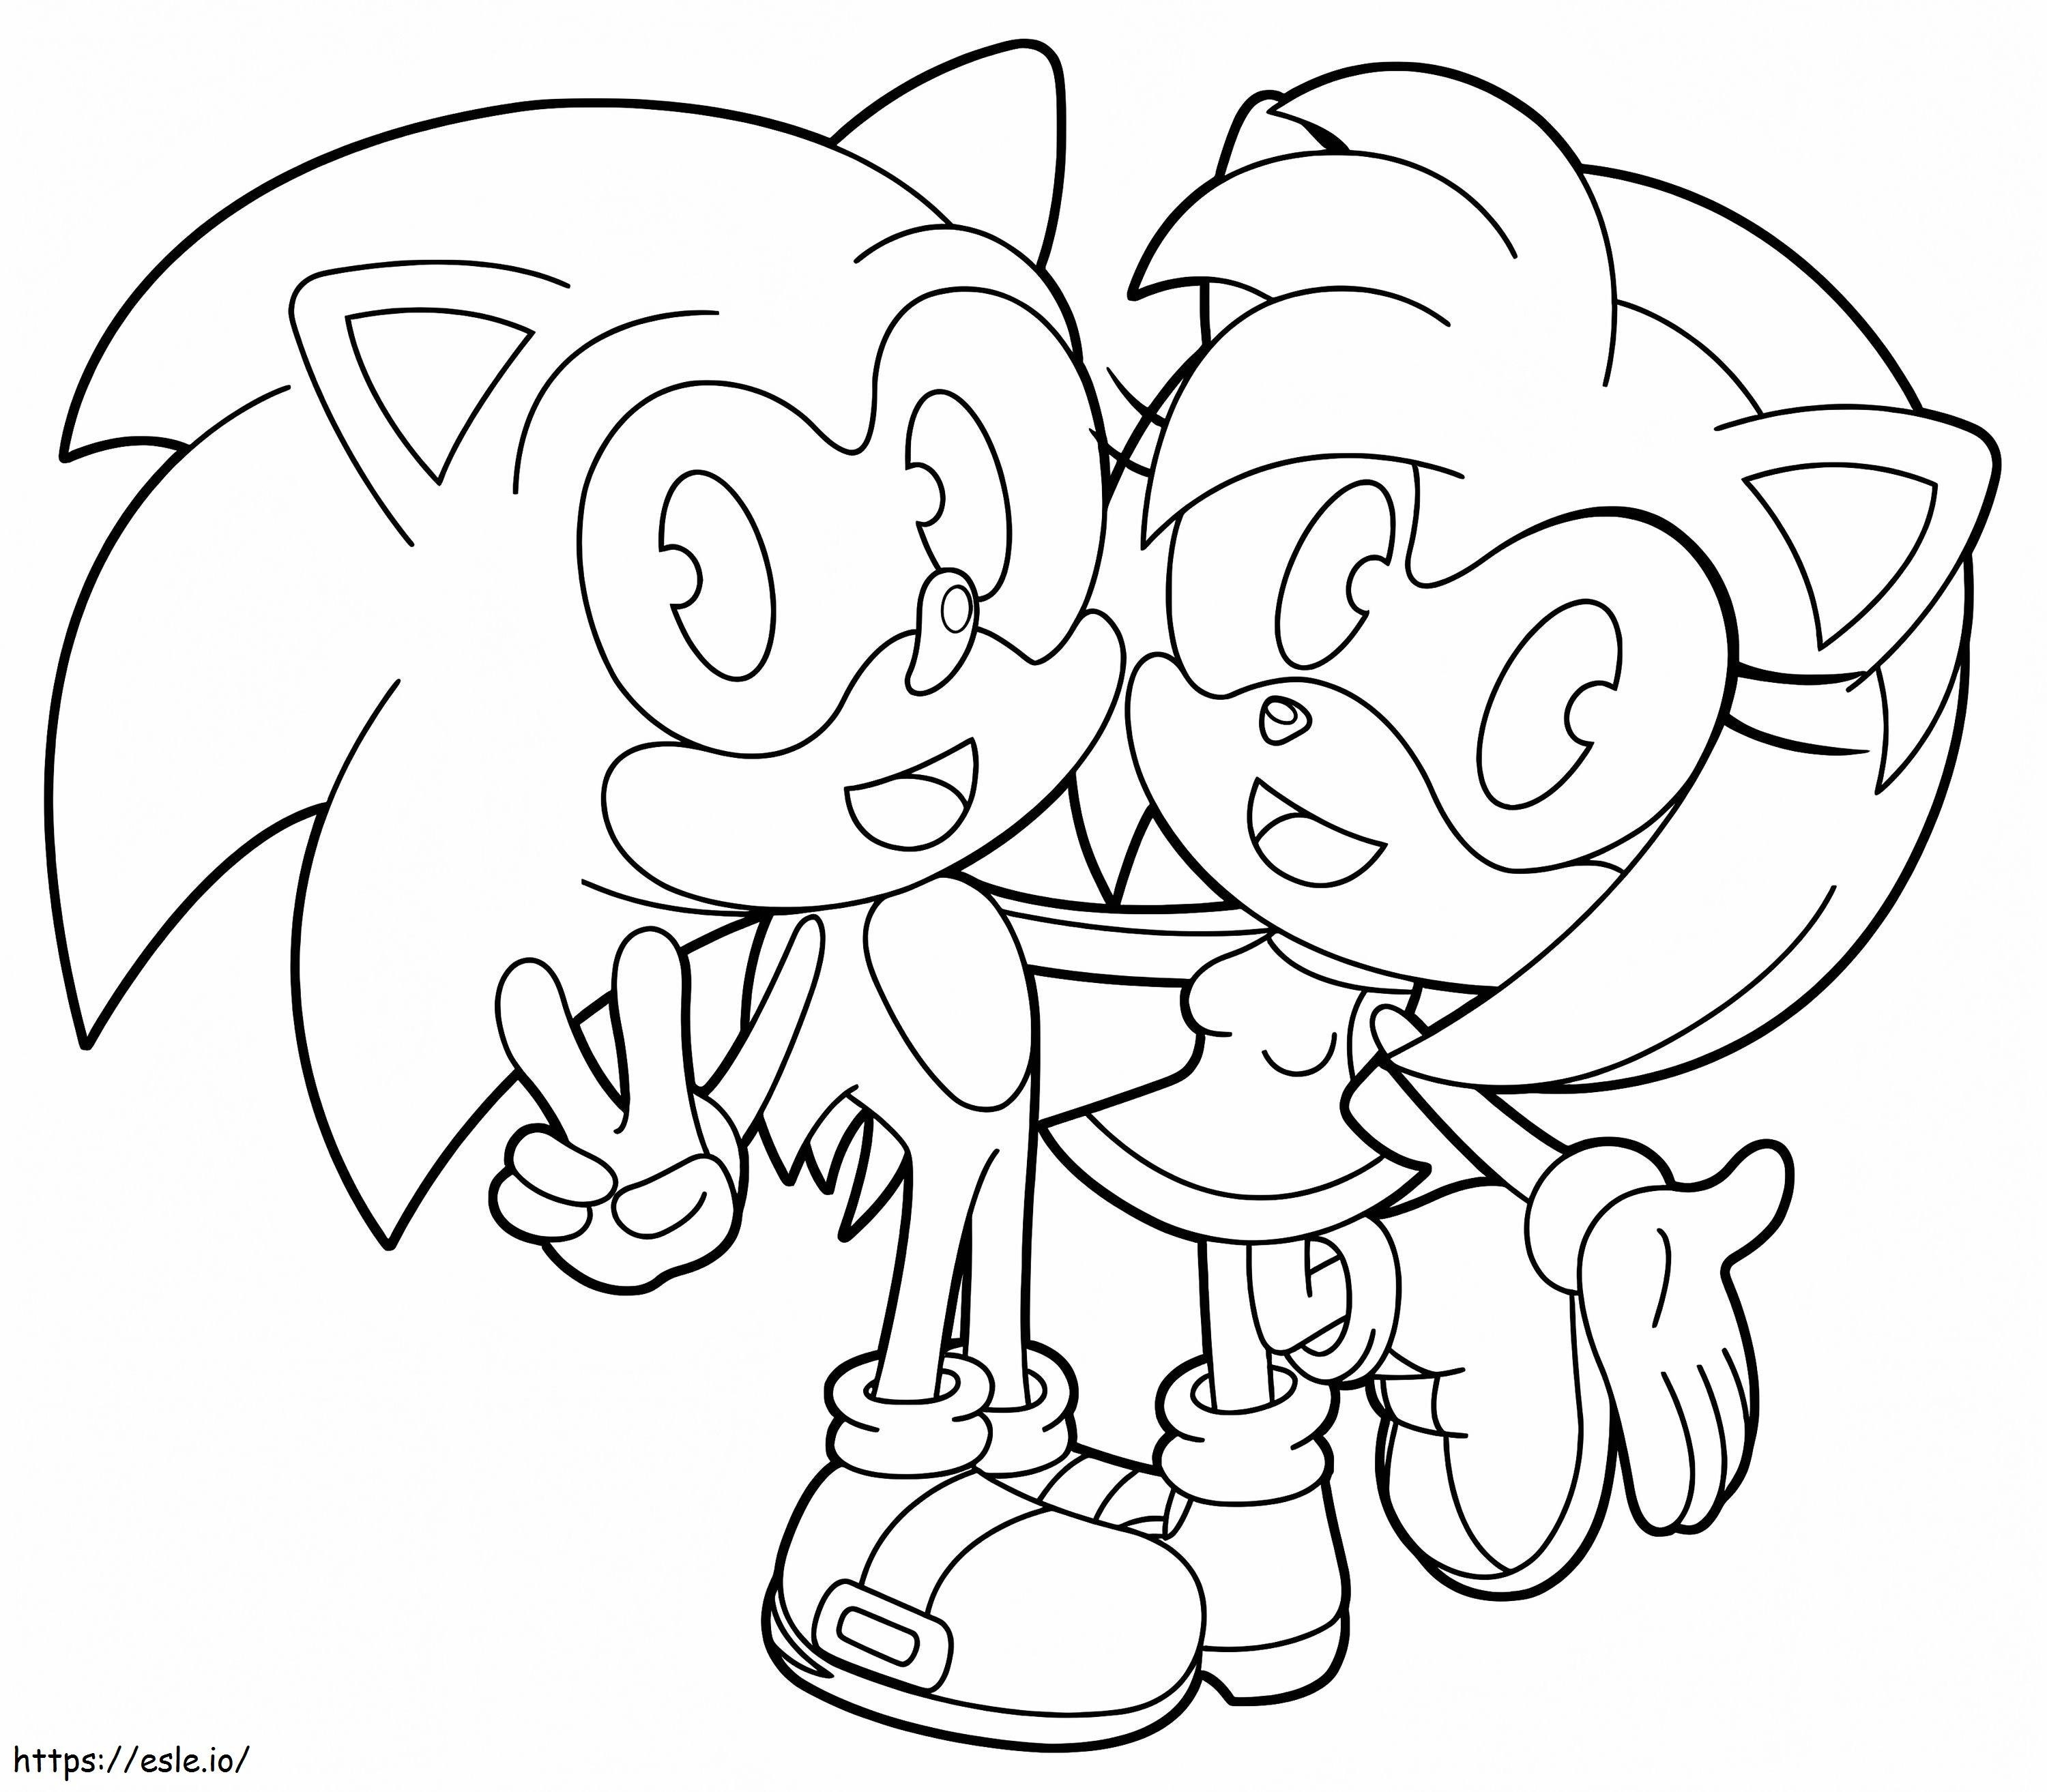 Amy Rose e Sonic da colorare